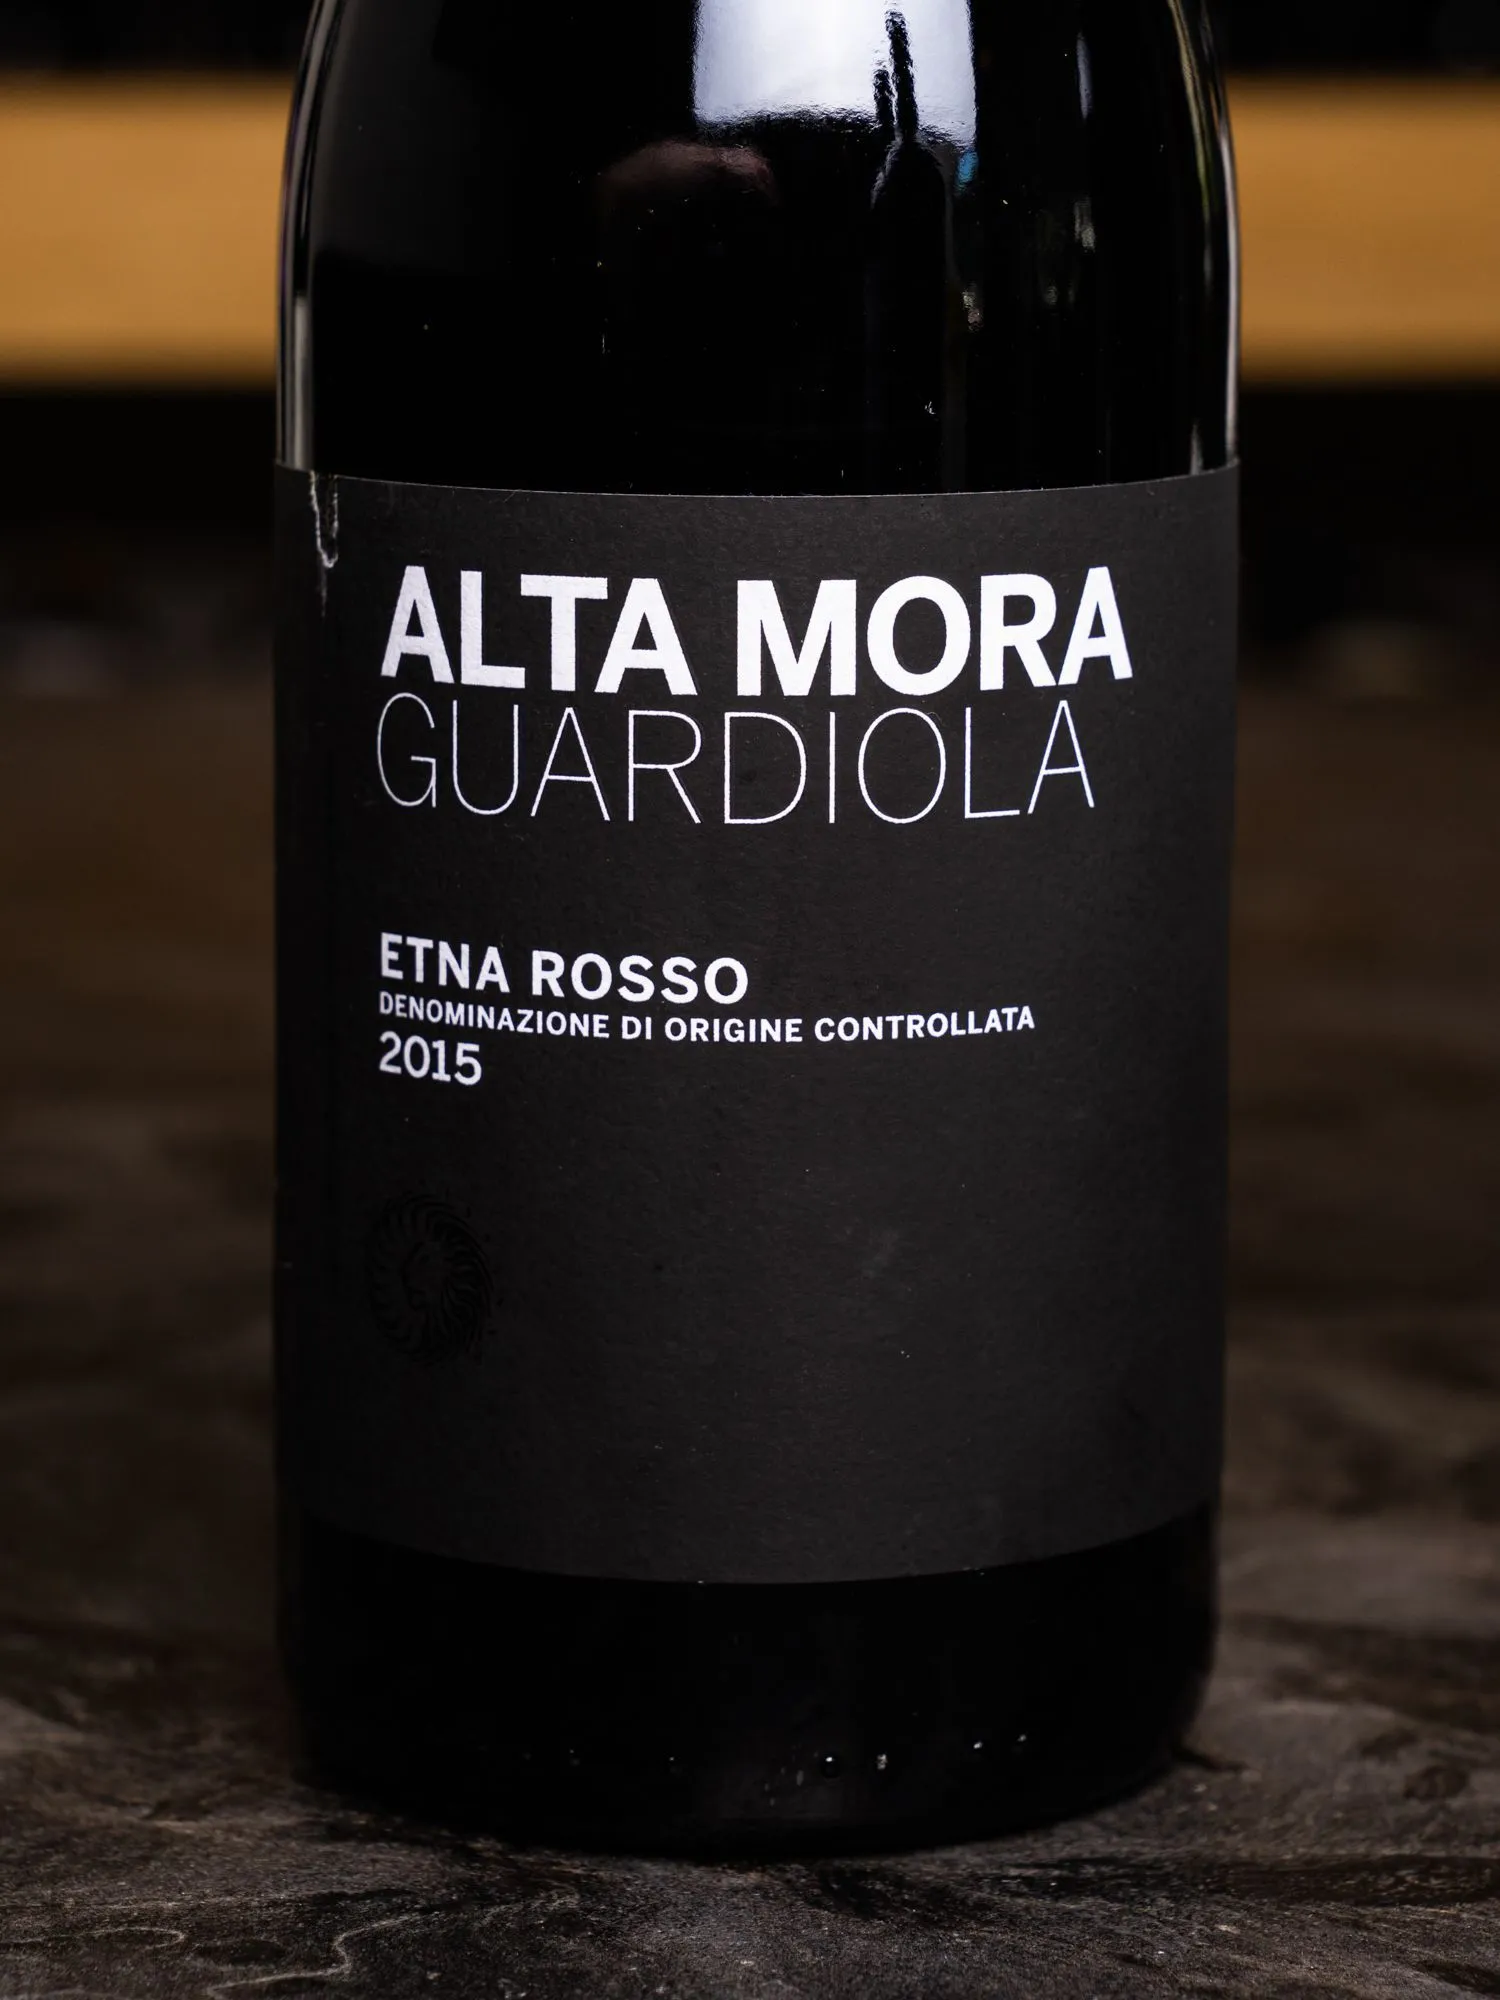 Вино Alta Mora Guardiola Etna Rosso / Альта Мора Гуардиола Этна Россо